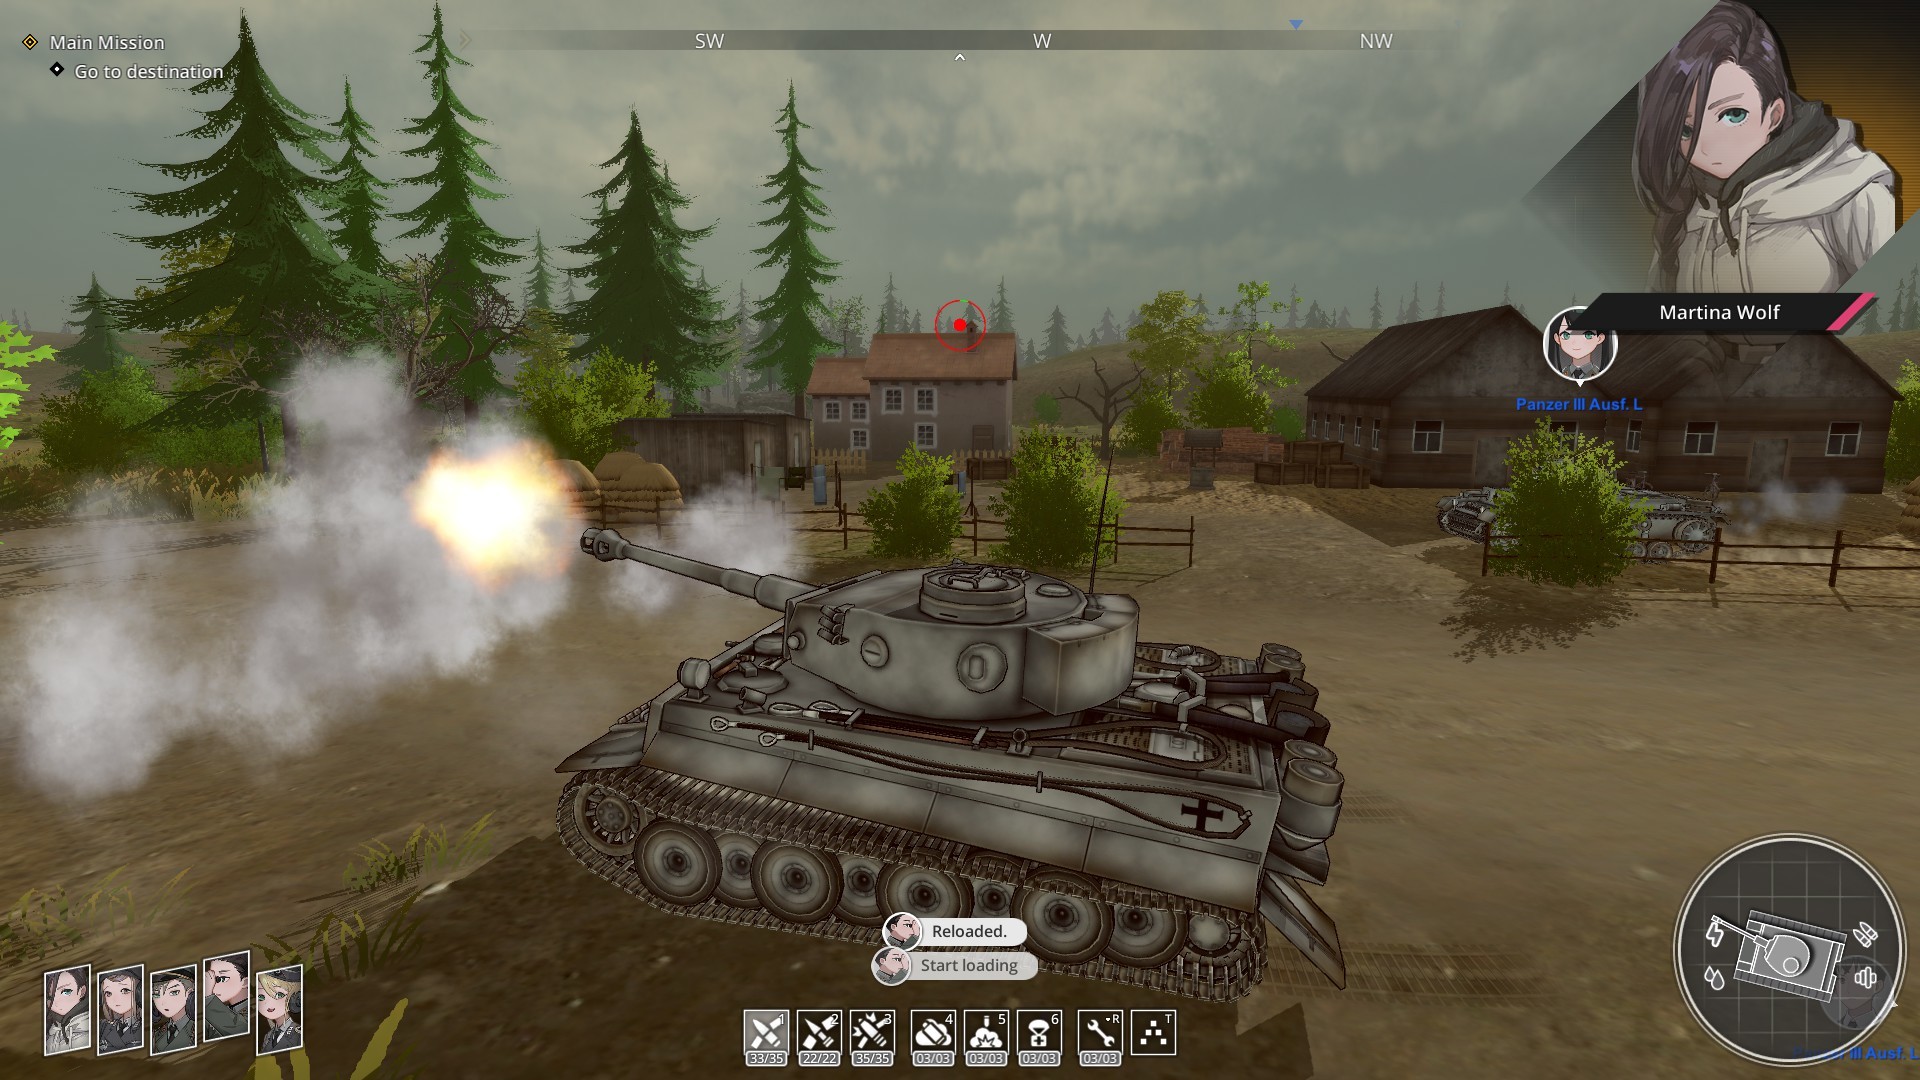 Panzer Knights Steam Altergift